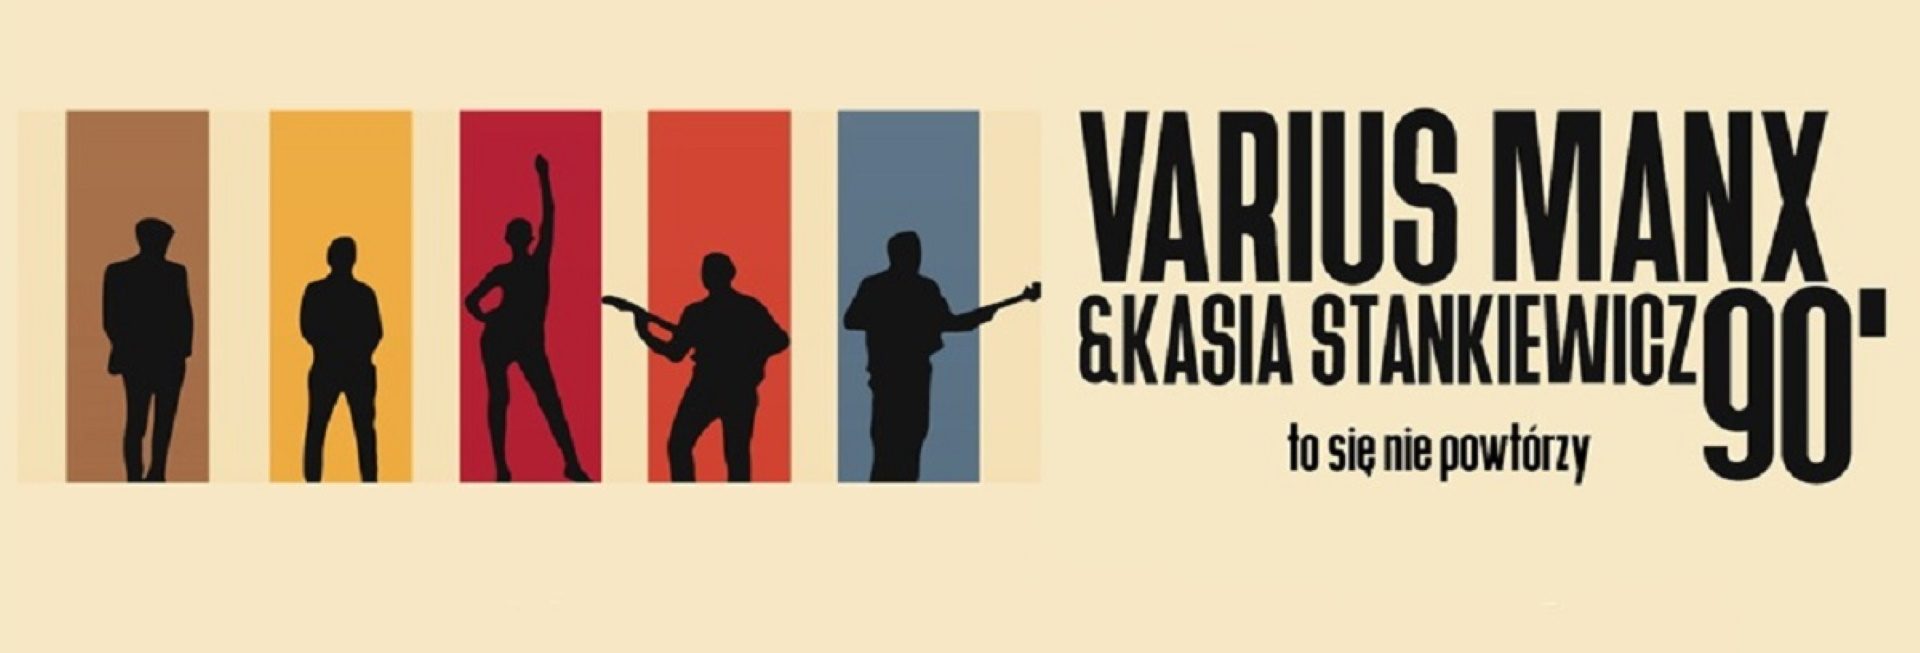 Plakat zapraszający w poniedziałek 14 sierpnia 2023 r. do Mrągowa na koncert zespołu Varius Manx & Kasia Stankiewicz - 90. TO SIĘ NIE POWTÓRZY! Mrągowo 2023.